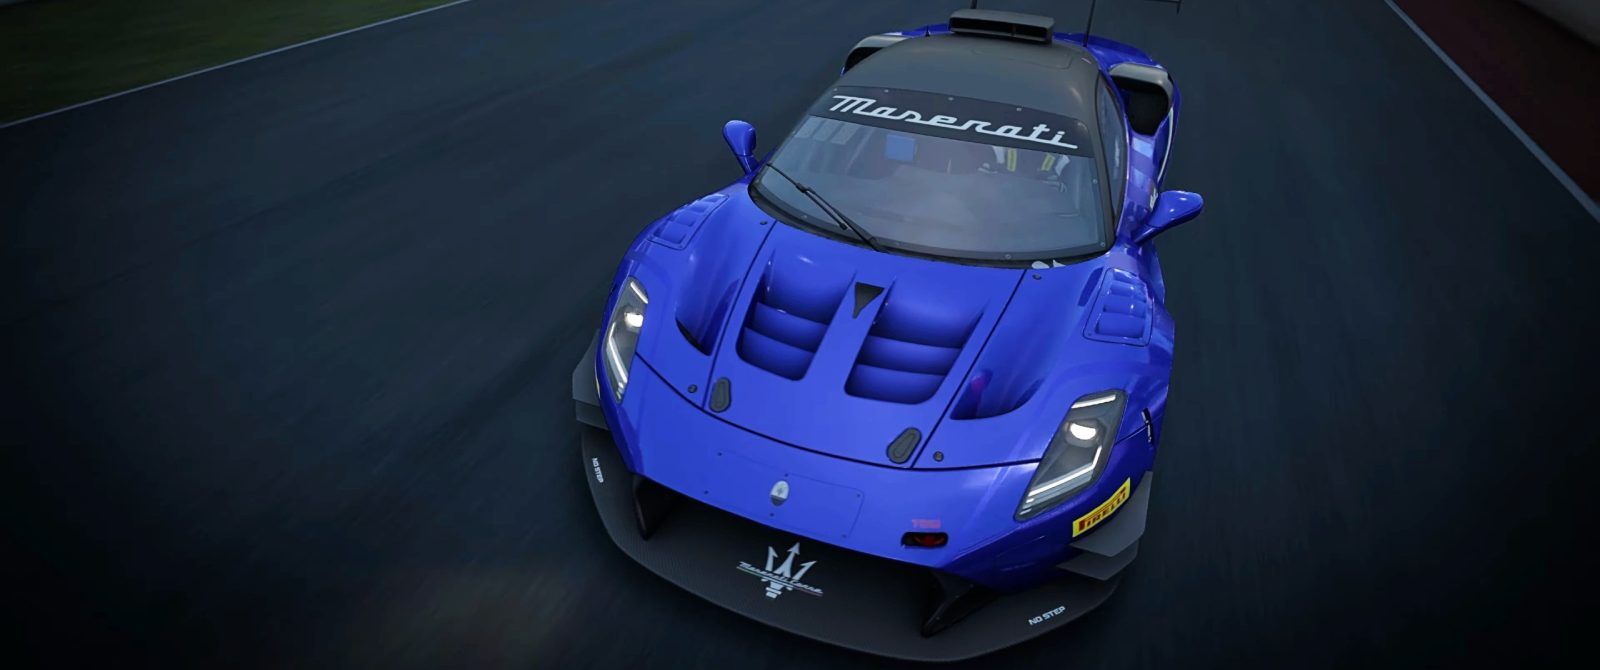 A blue racing car on a racetrack.